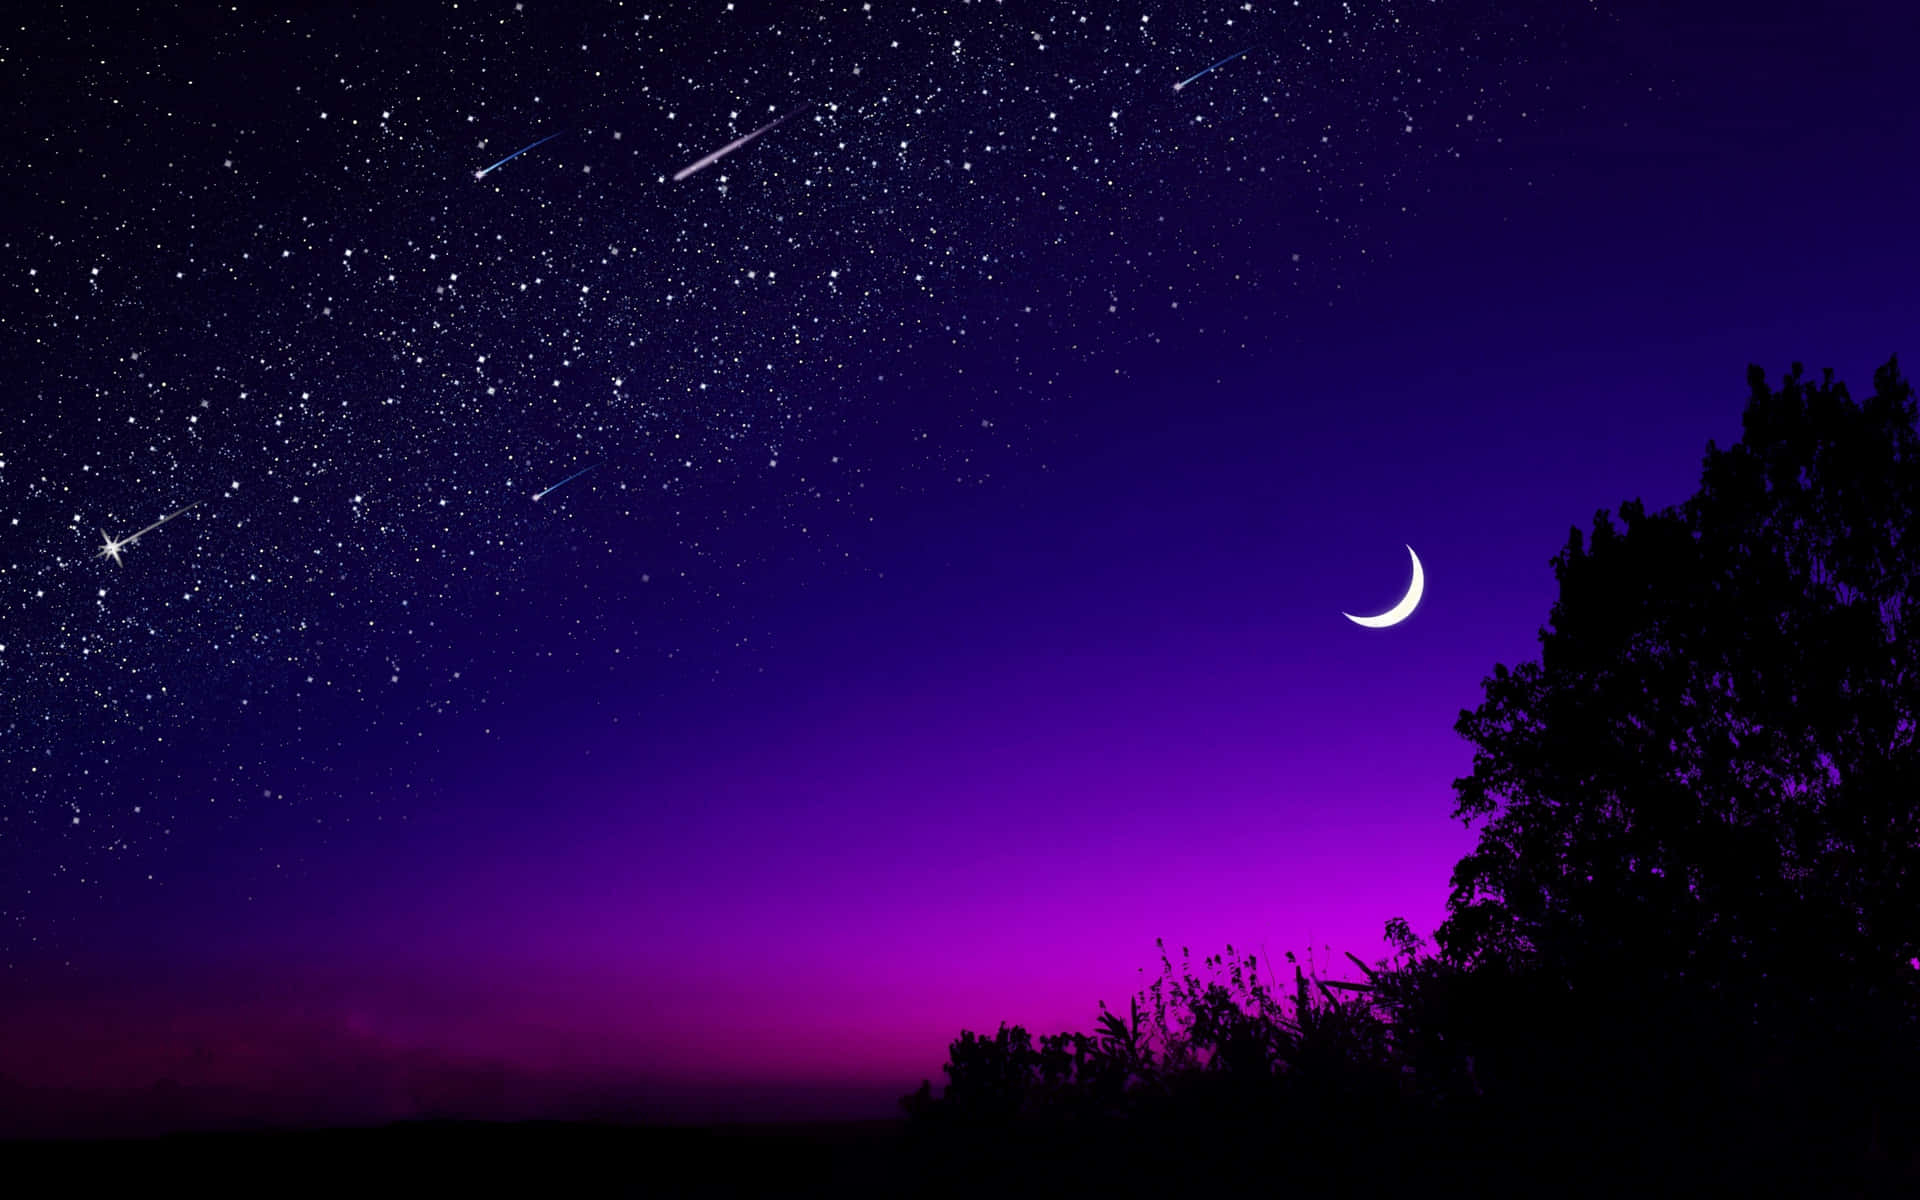 Shootingstars Crescent Night Sky Moon - Stjärnfall Bågformad Nattsky Måne. Wallpaper